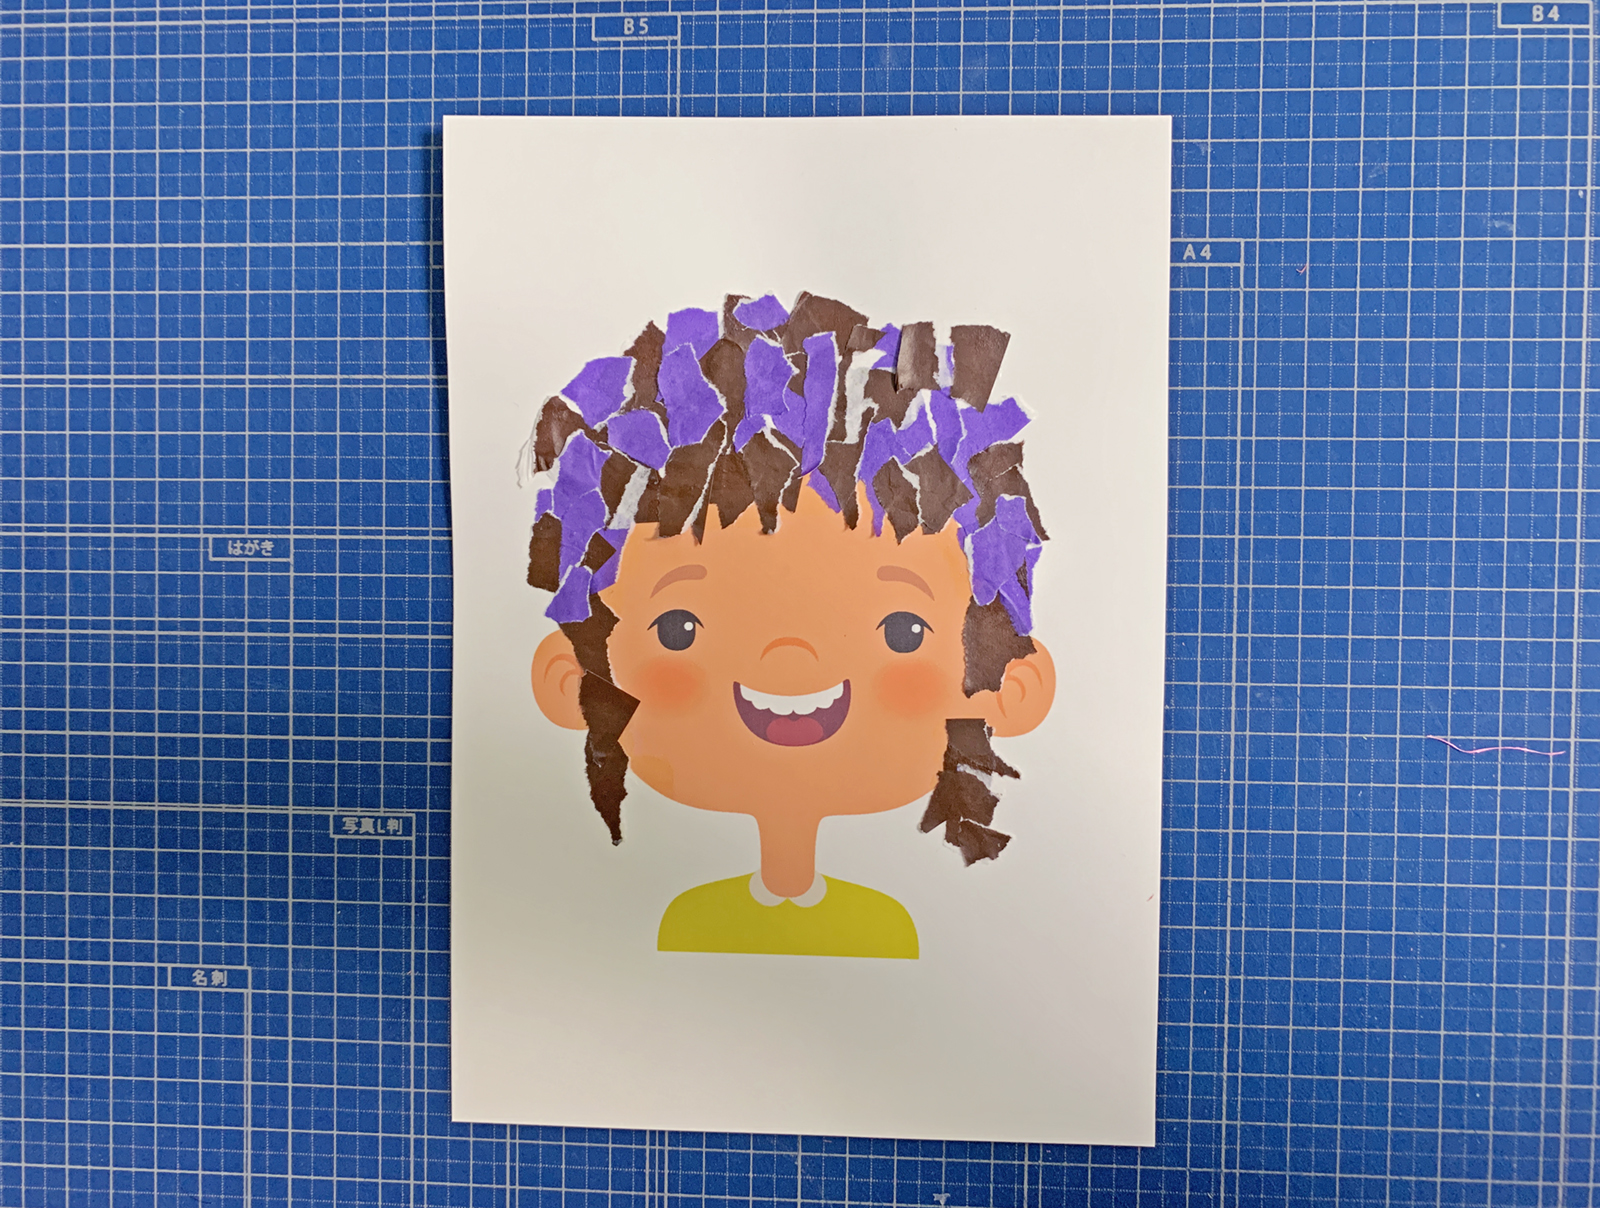 ちぎり絵台紙 子どもの髪型 を作成しました モンテッソーリ教育情報サイト バンビーノ